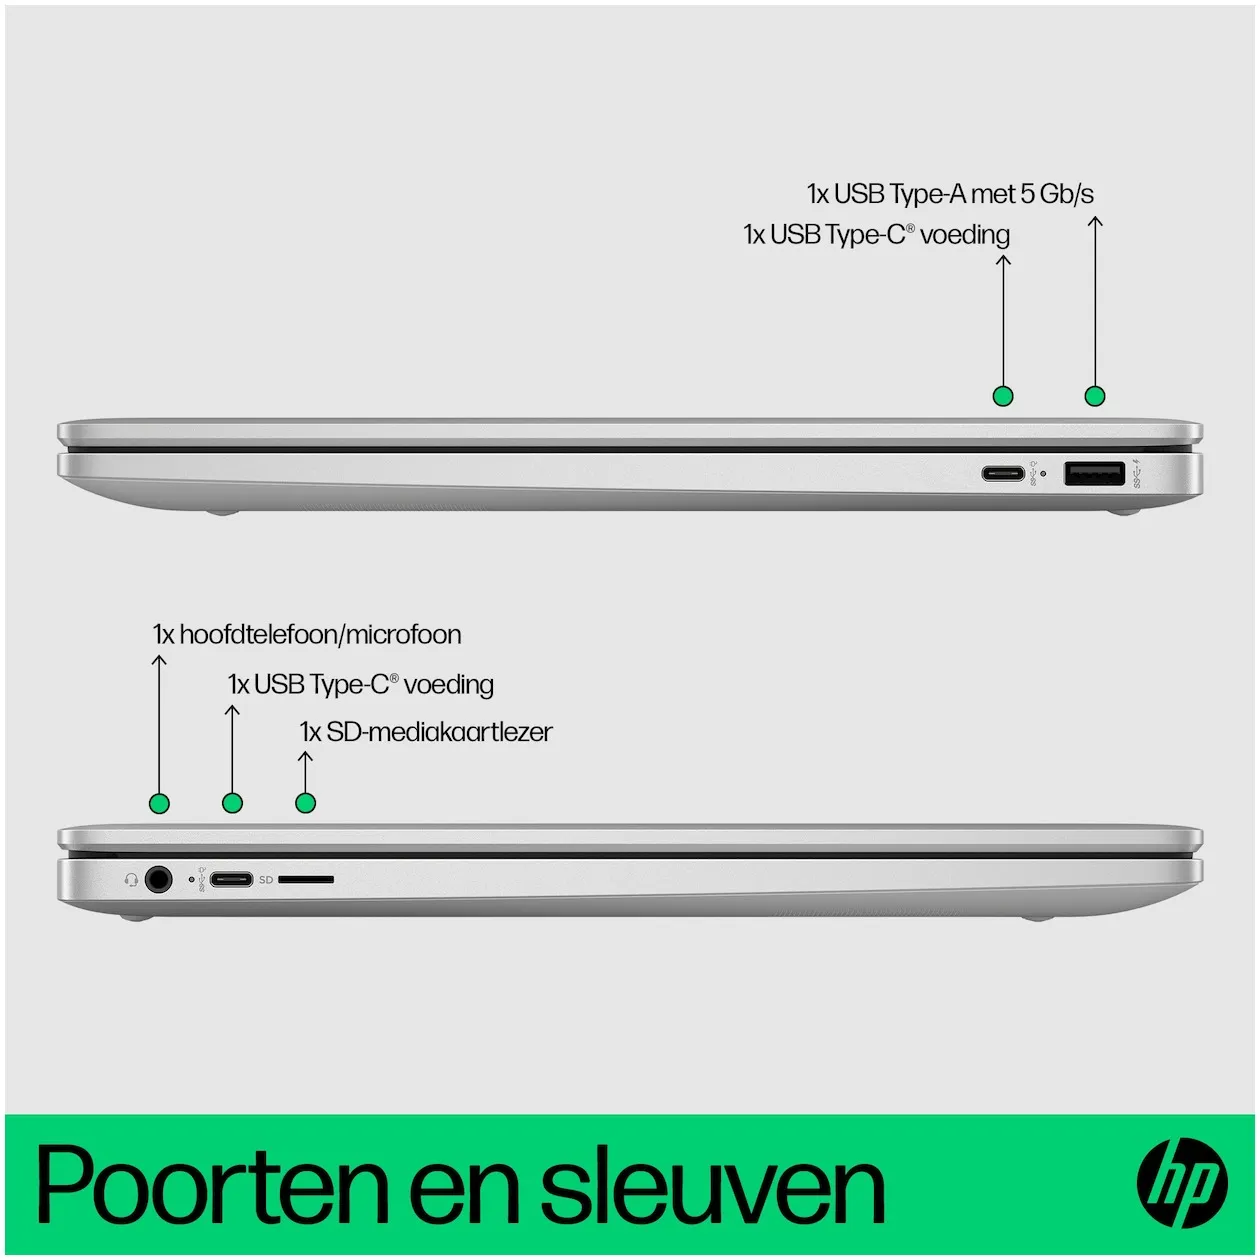 HP Chromebook 15a-nb0250nd